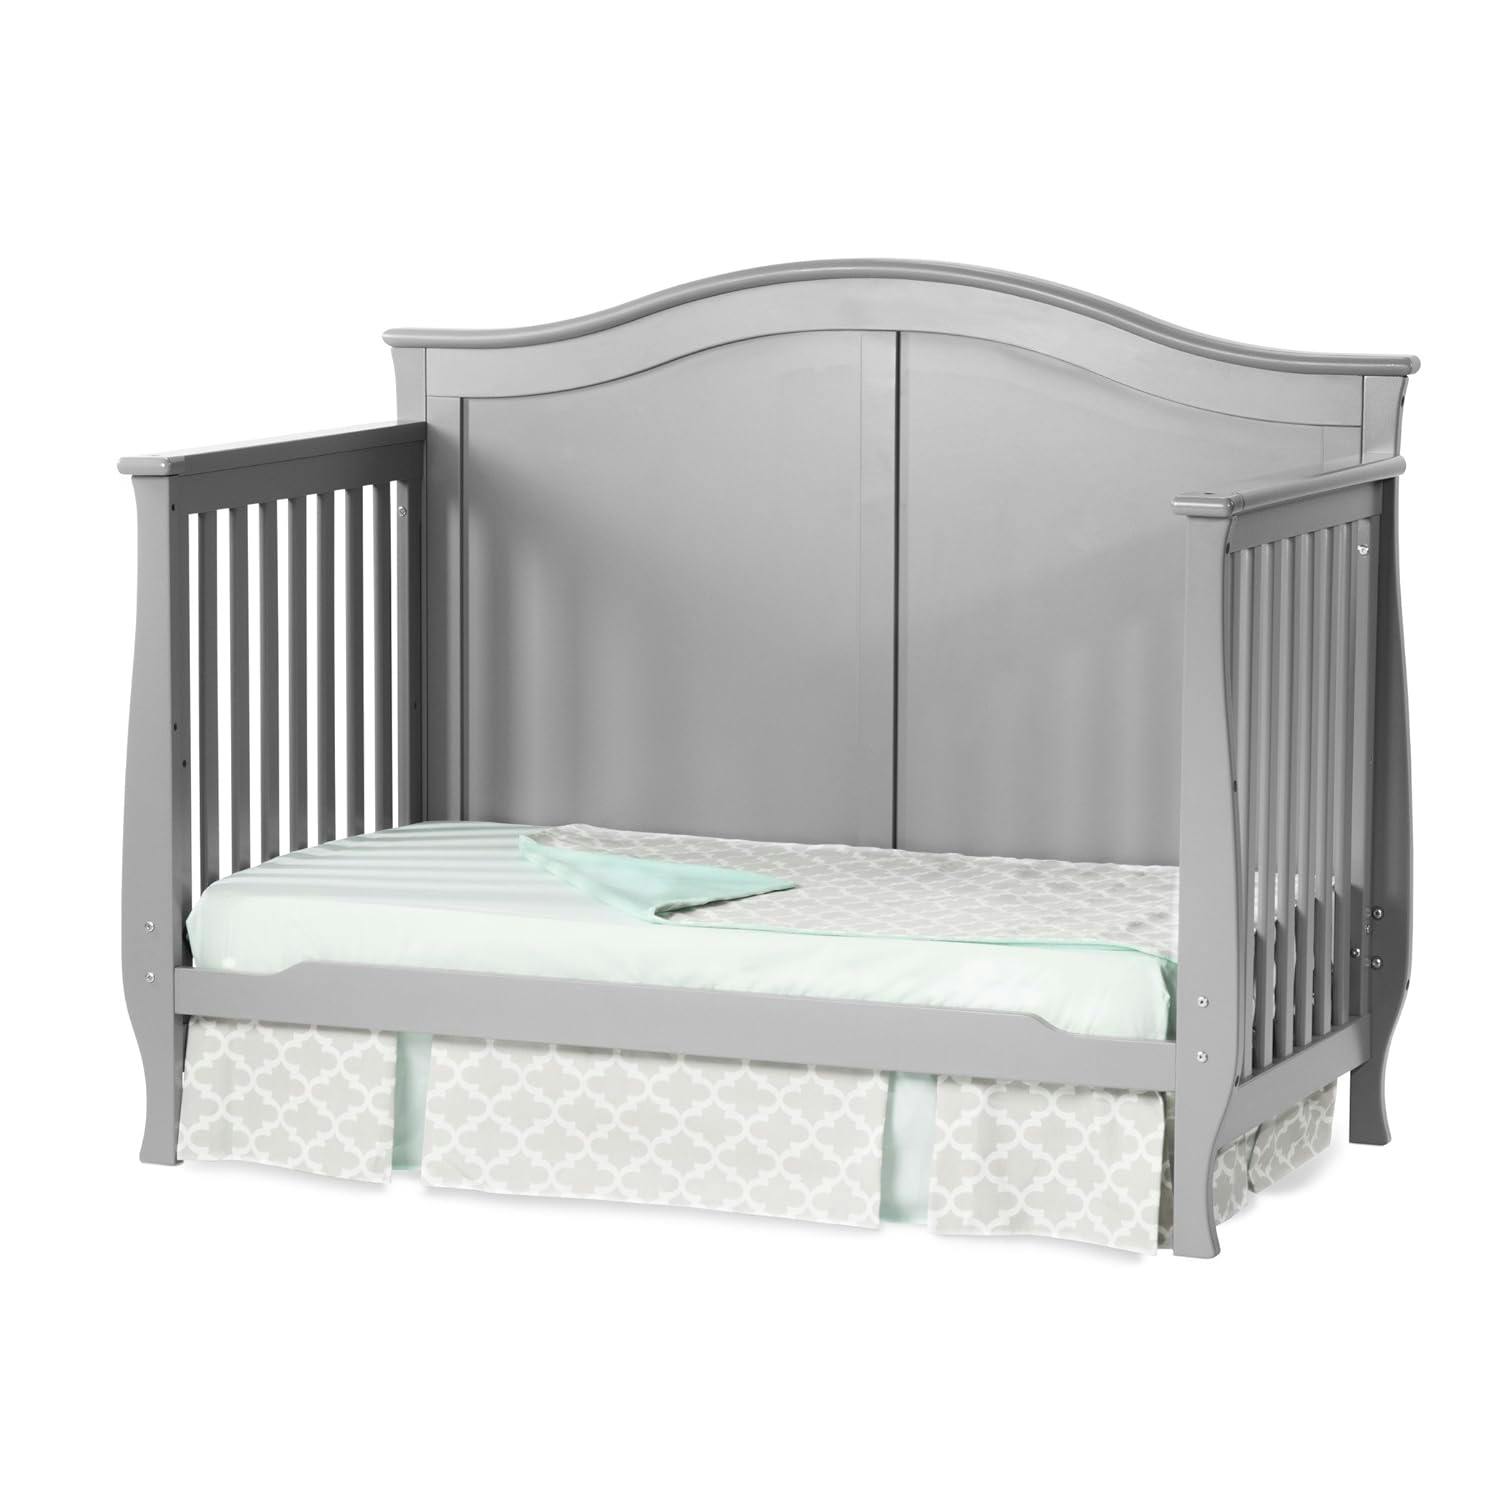 Camden 4-in-1 Cool Gray Convertible Crib